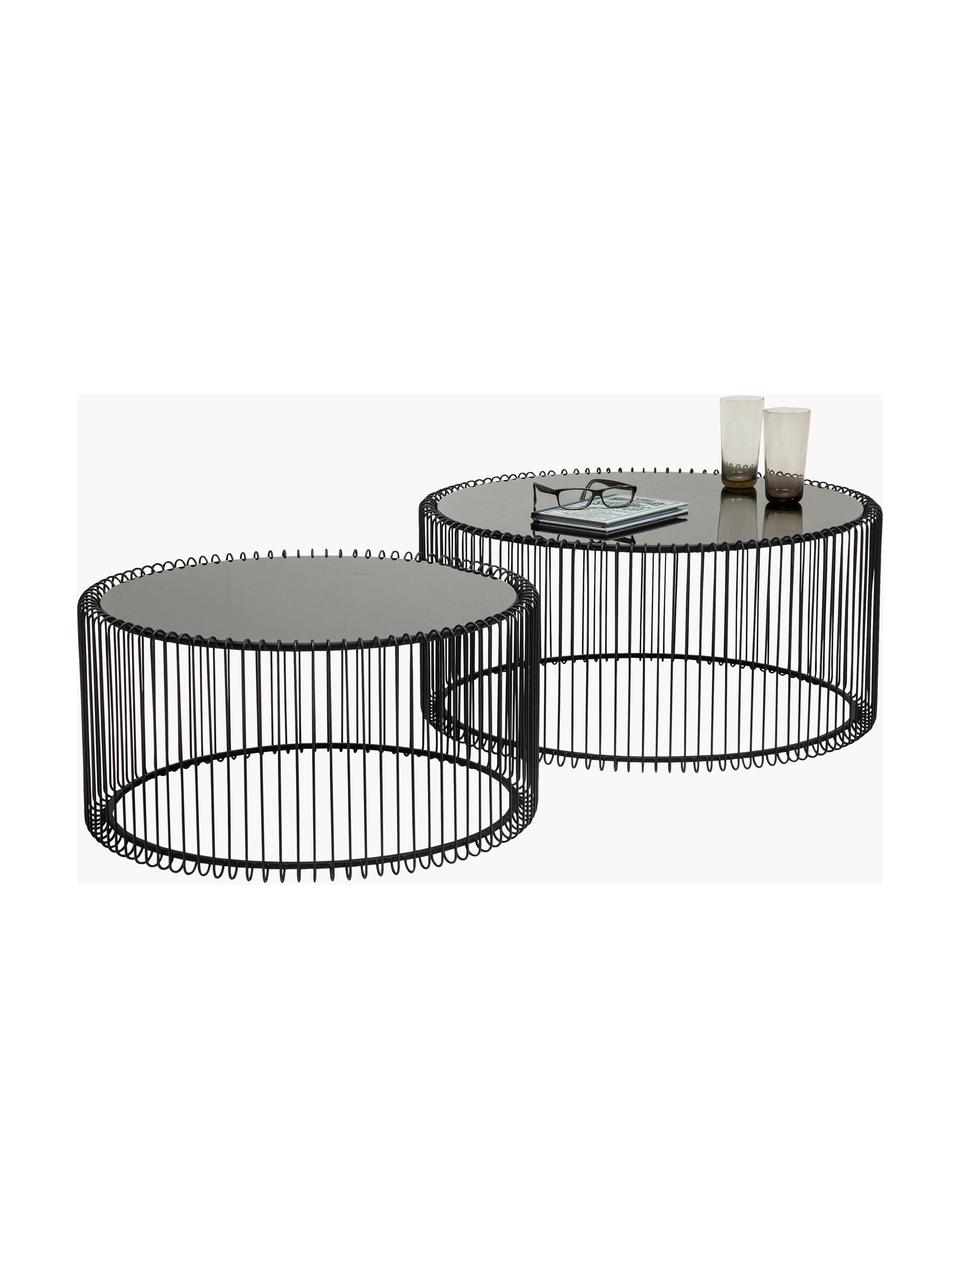 Salontafels Wire met glazen tafelblad, set van 2, Frame: gepoedercoat metaal, Tafelblad: veiligheidsglas, in folie, Zwart, spiegelglas zwart getint, Set met verschillende groottes